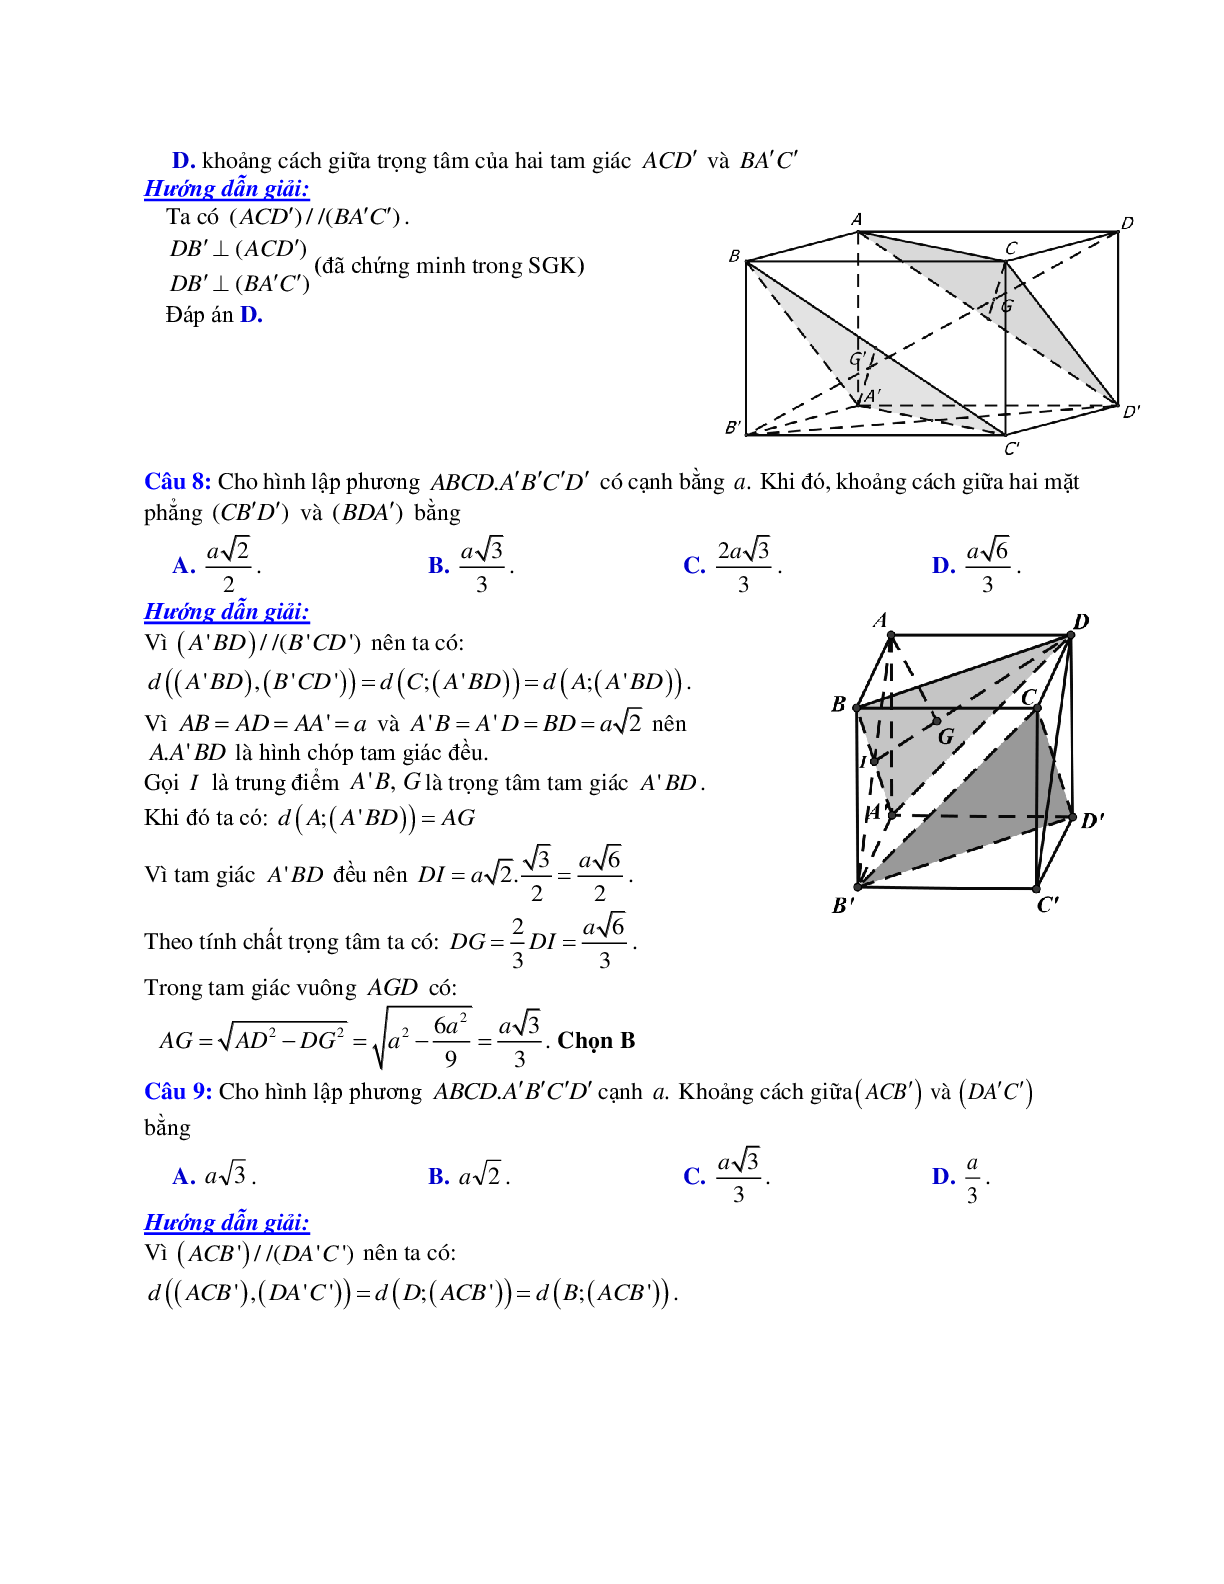 Phương pháp giải và bài tập về Cách tính khoảng cách giữa hai mặt phẳng song song có đáp án (trang 4)